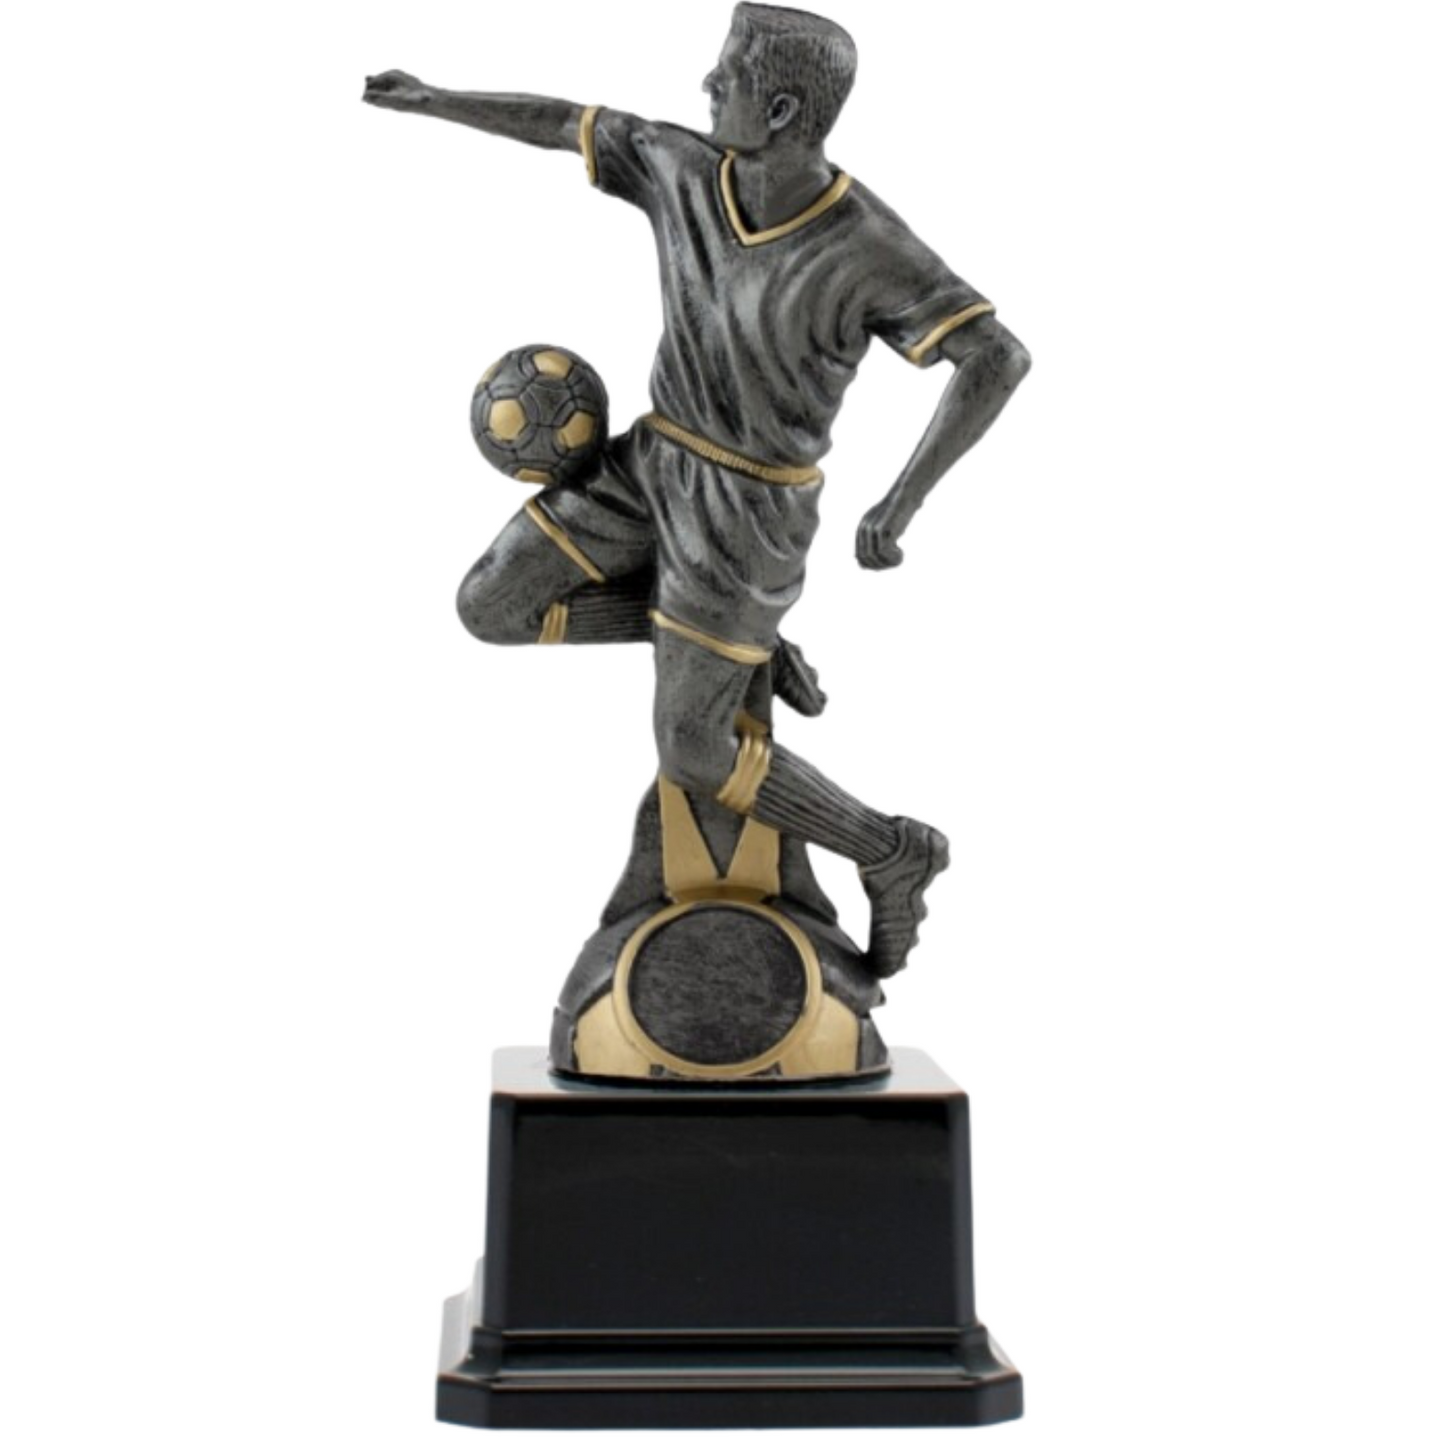  Premiazioni personalizzate premio calcio 15.008